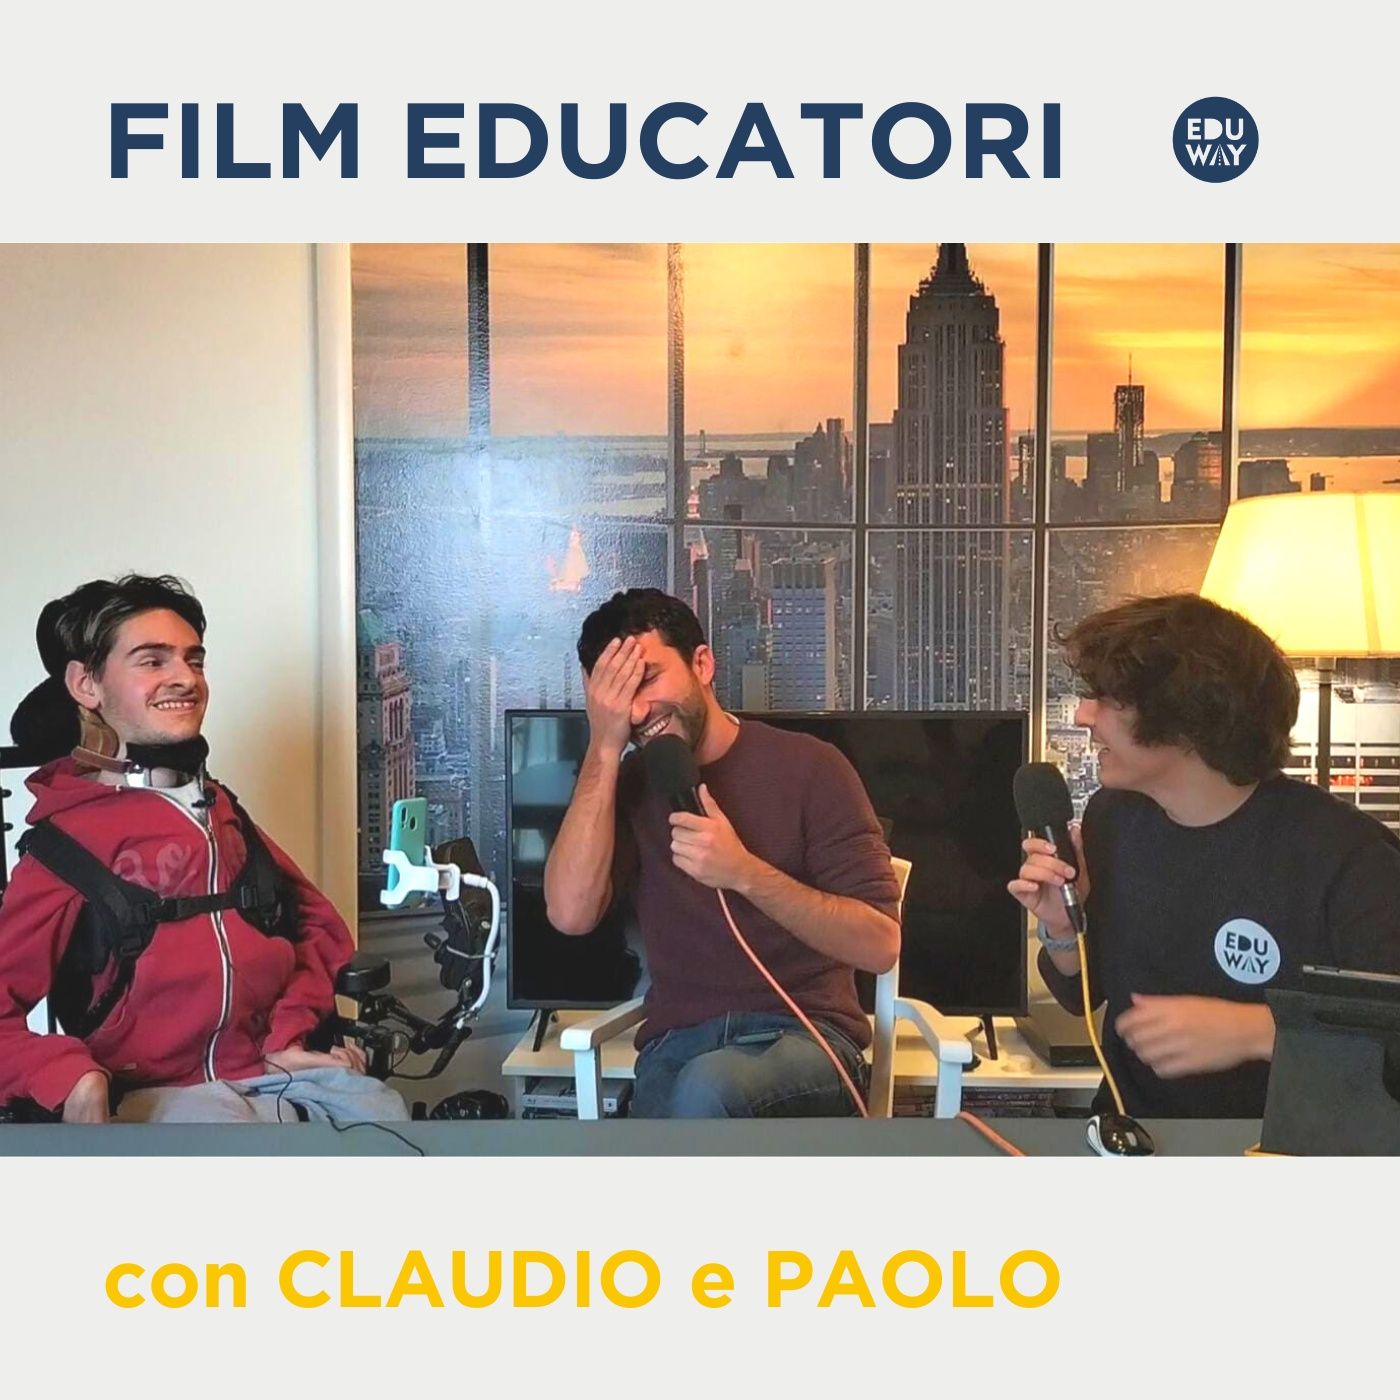 Film educatori con Claudio e Paolo